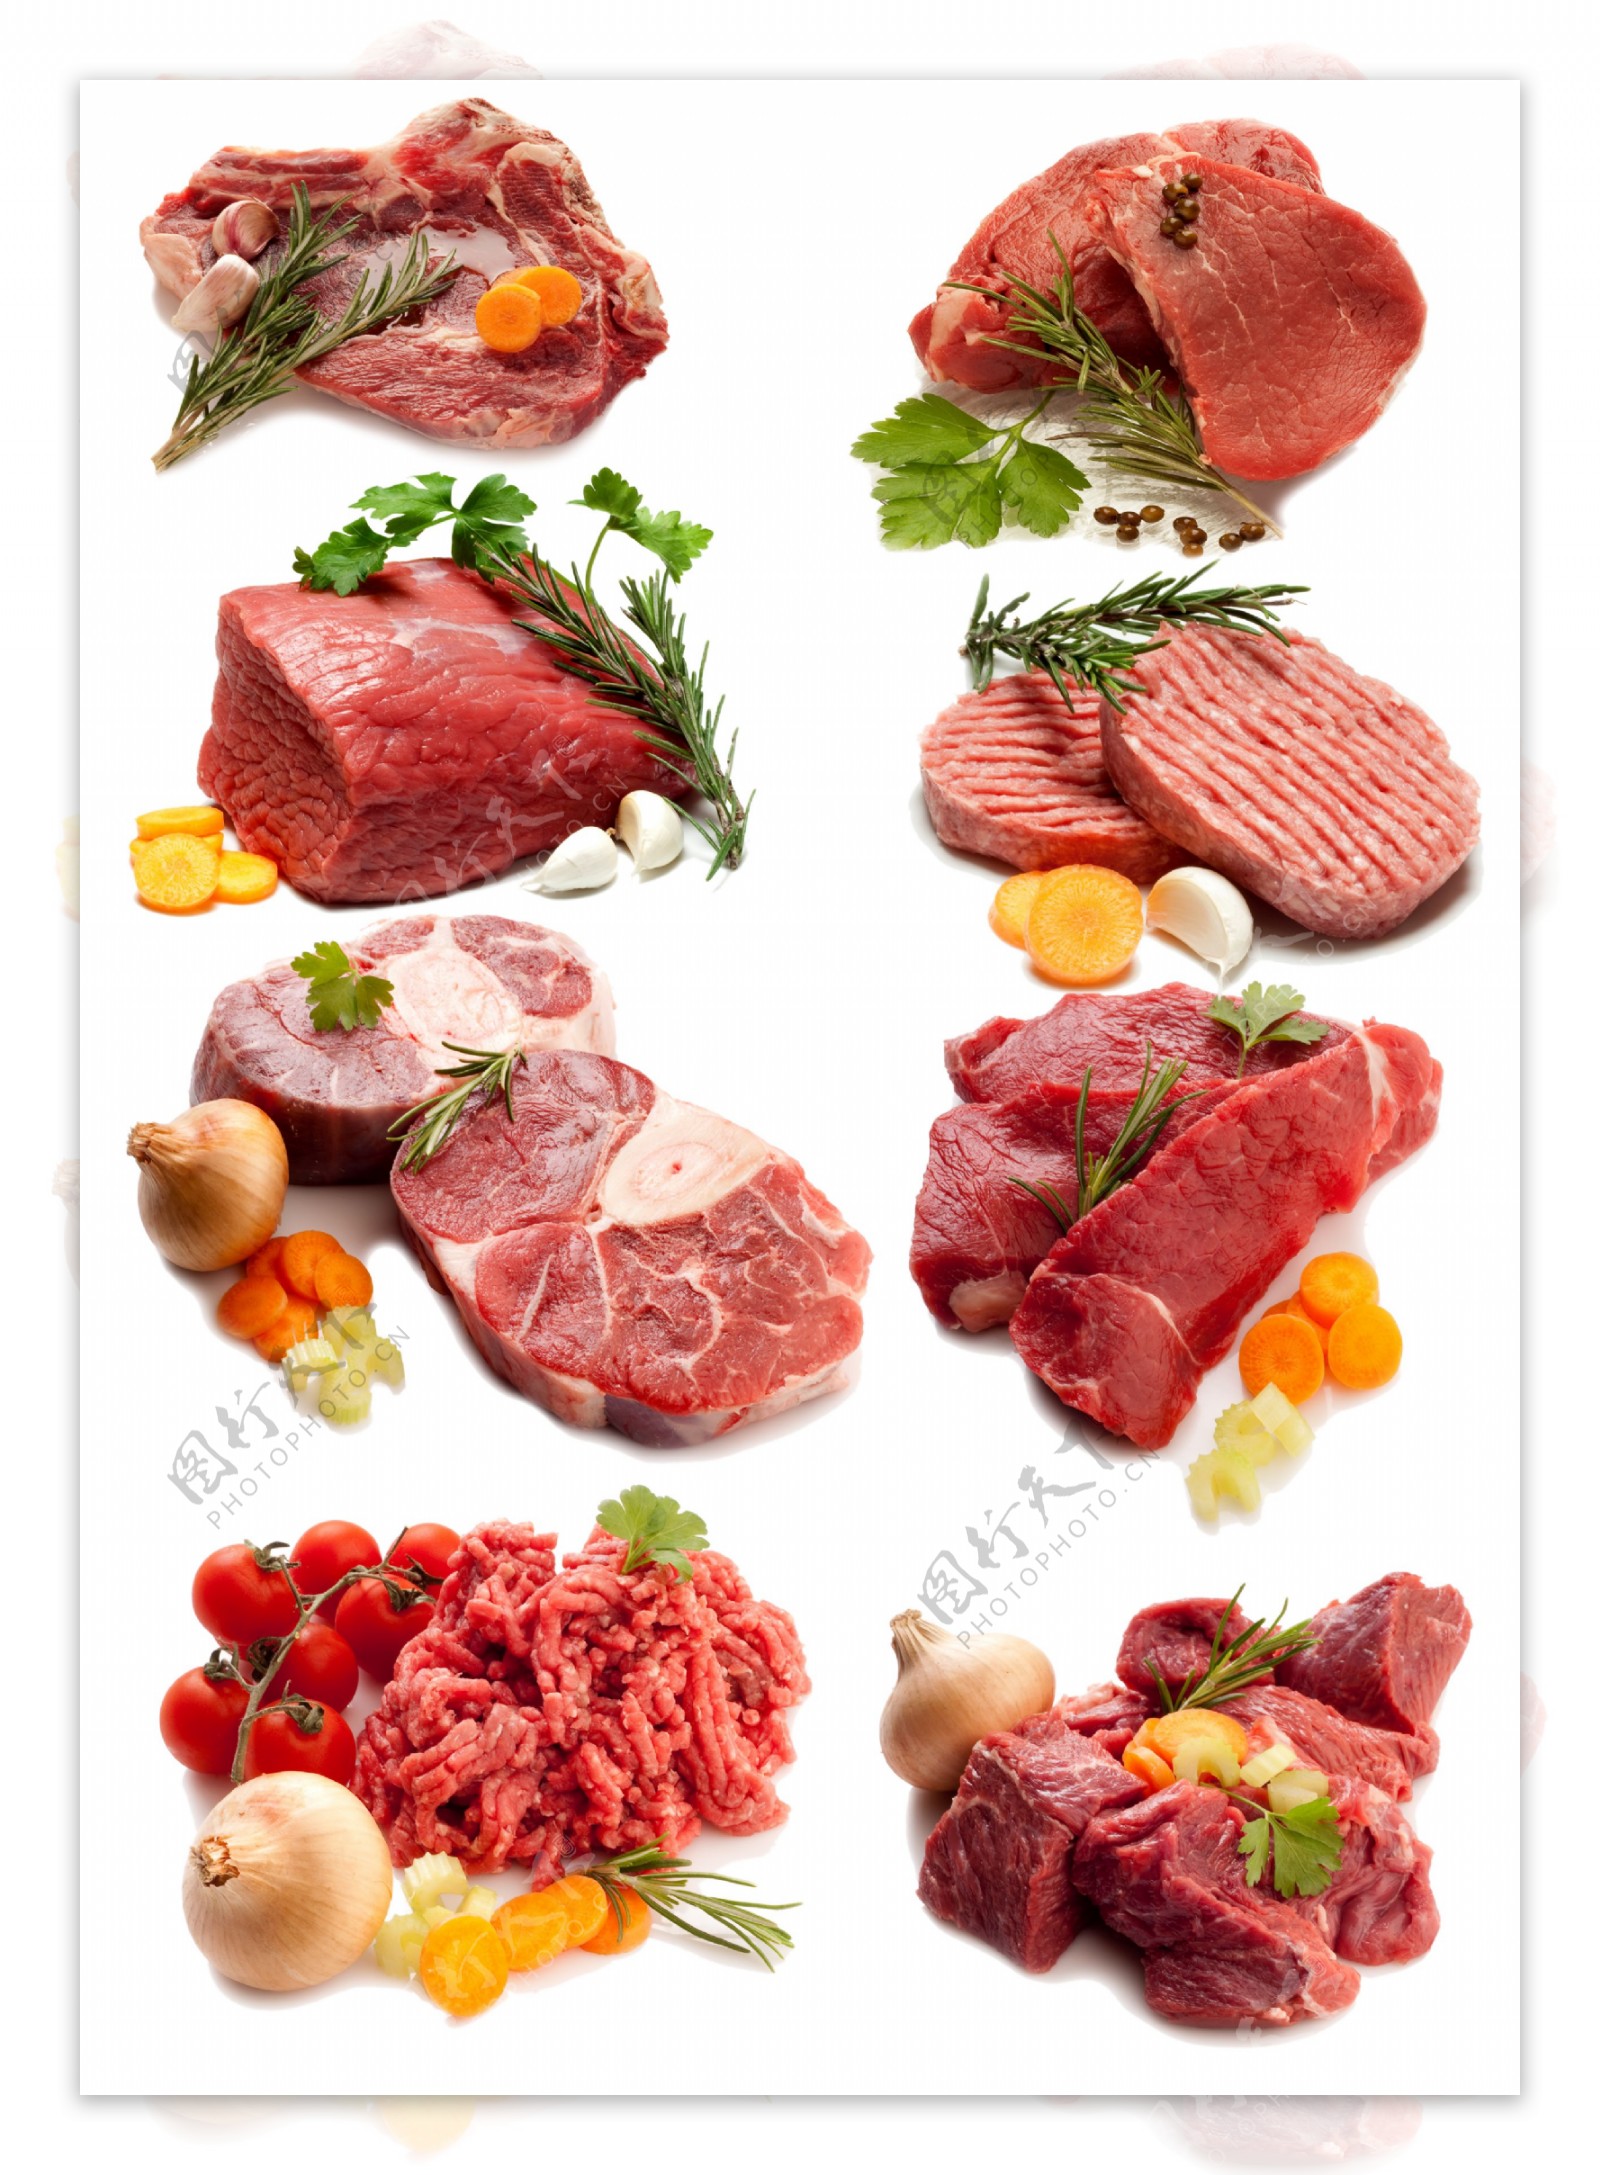 瘦肉与配菜图片